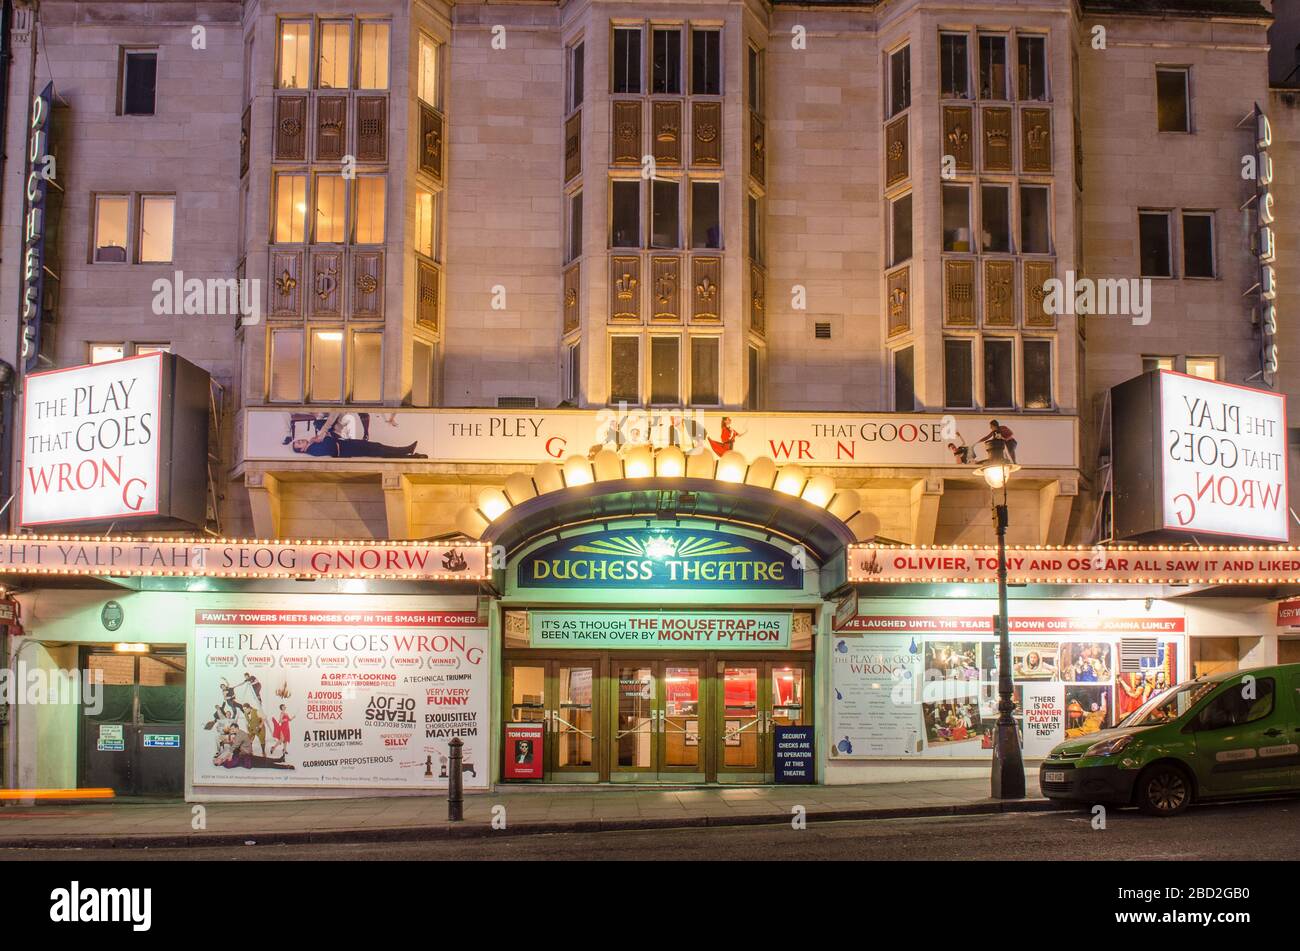 LONDRA - il Duchess Theatre situato su Catherine Street nel West End di Londra, attualmente mostrando il gioco che va male Foto Stock